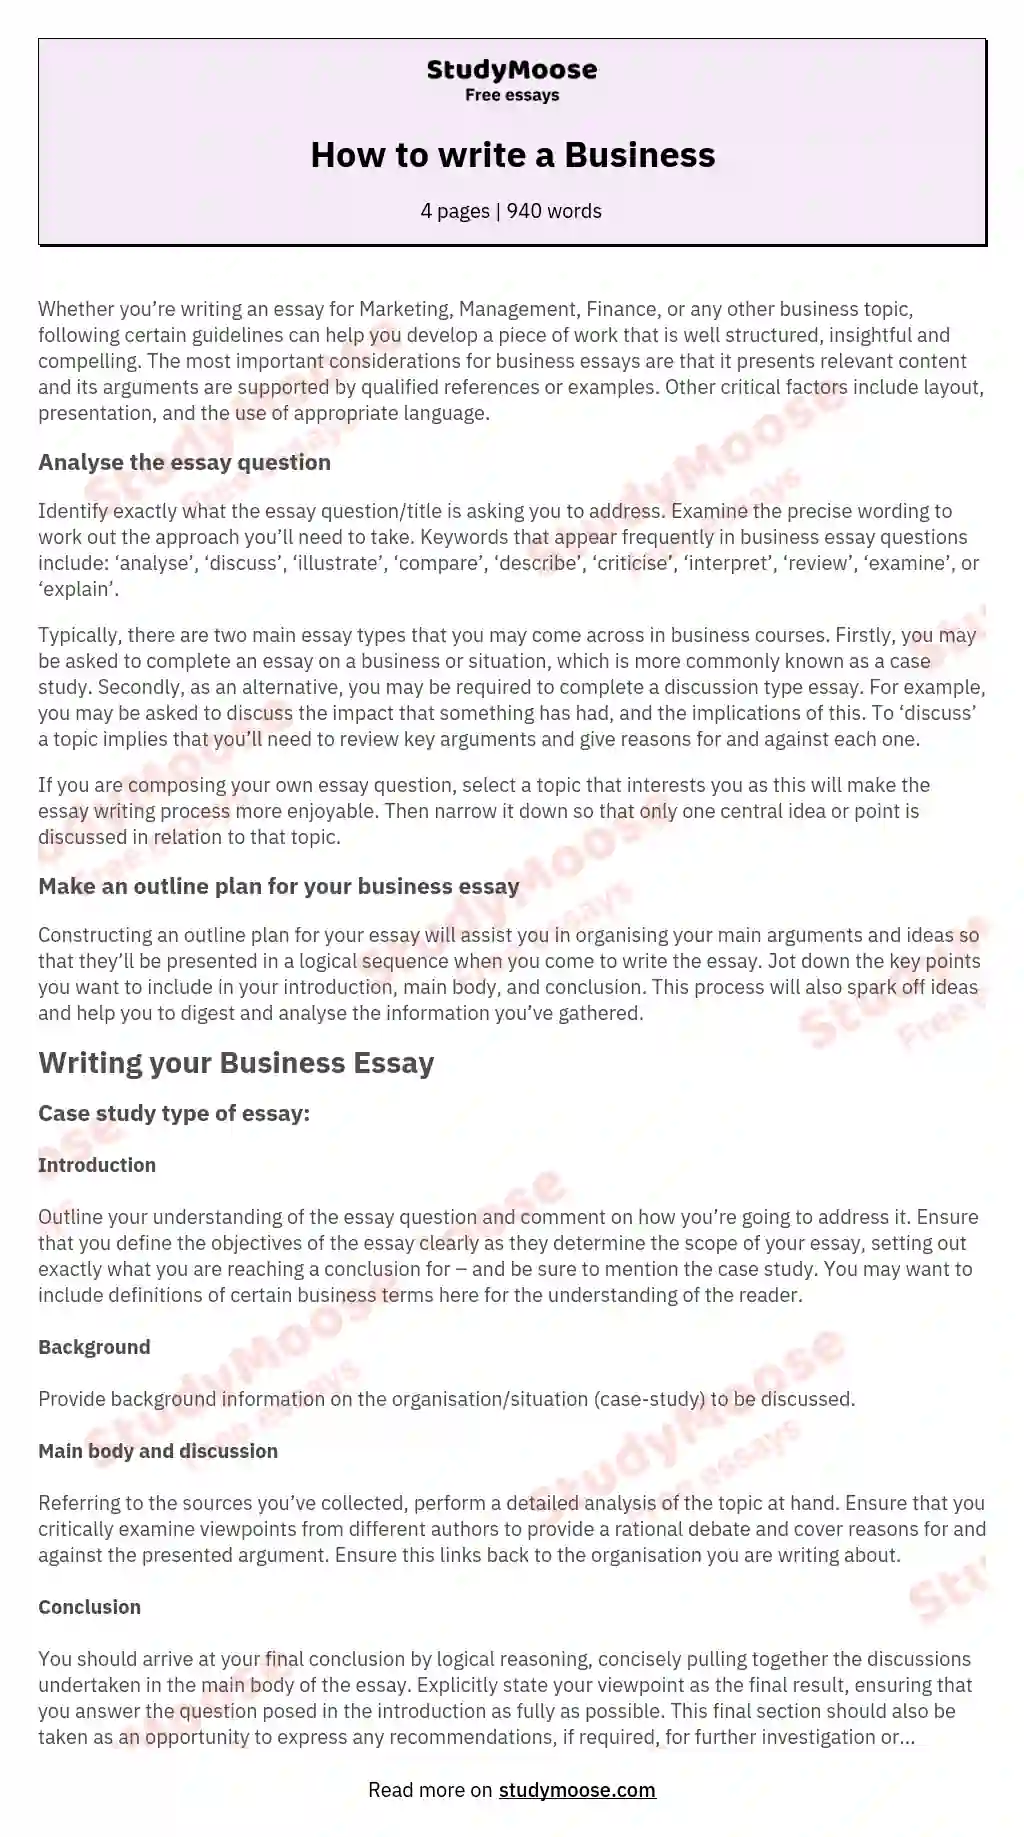 how to write a business essay